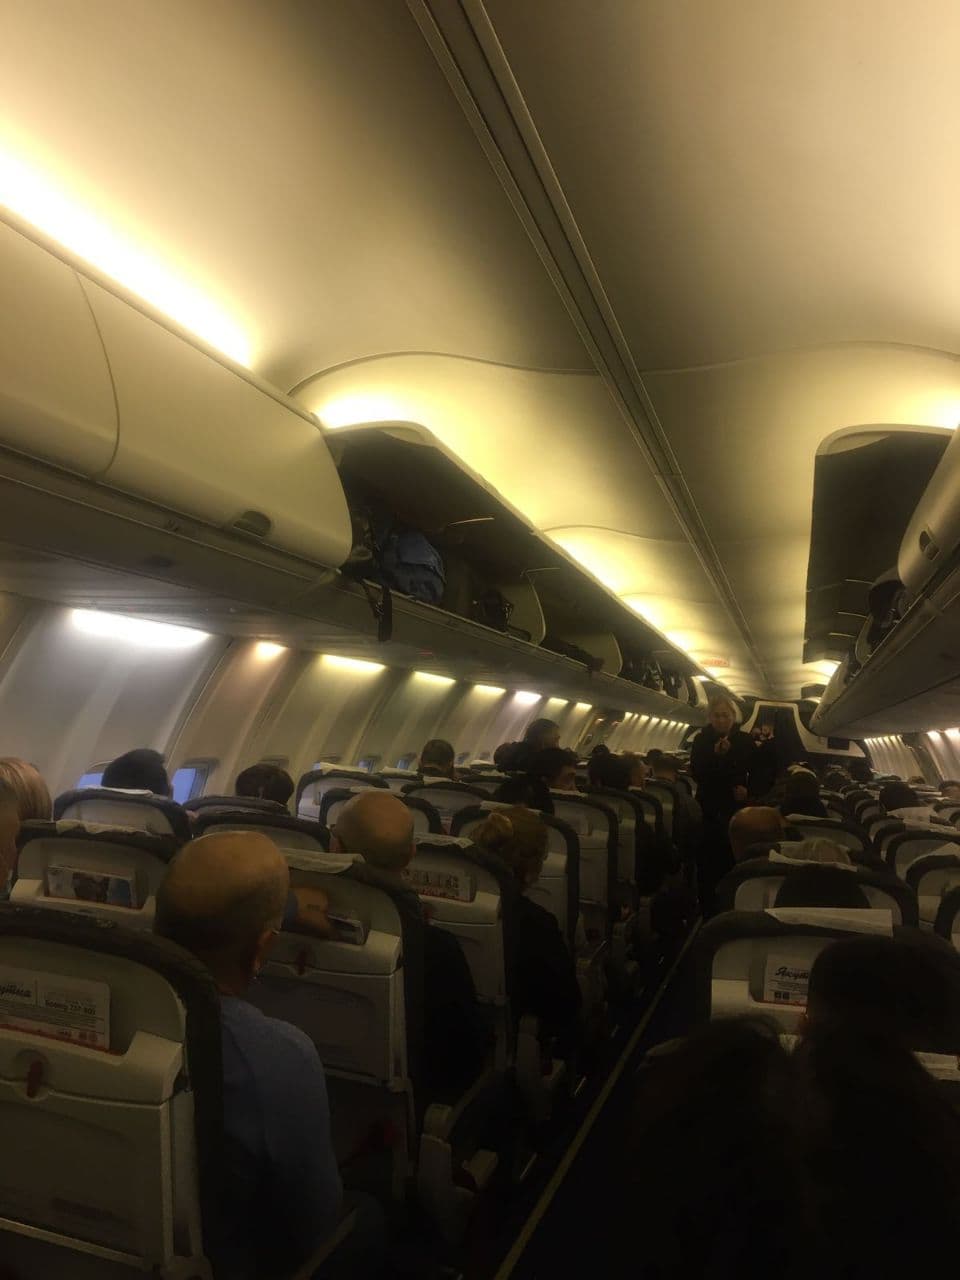 Авиакомпания "Якутия" сообщила, что кормила пассажиров. Но отключила комментарии к посту